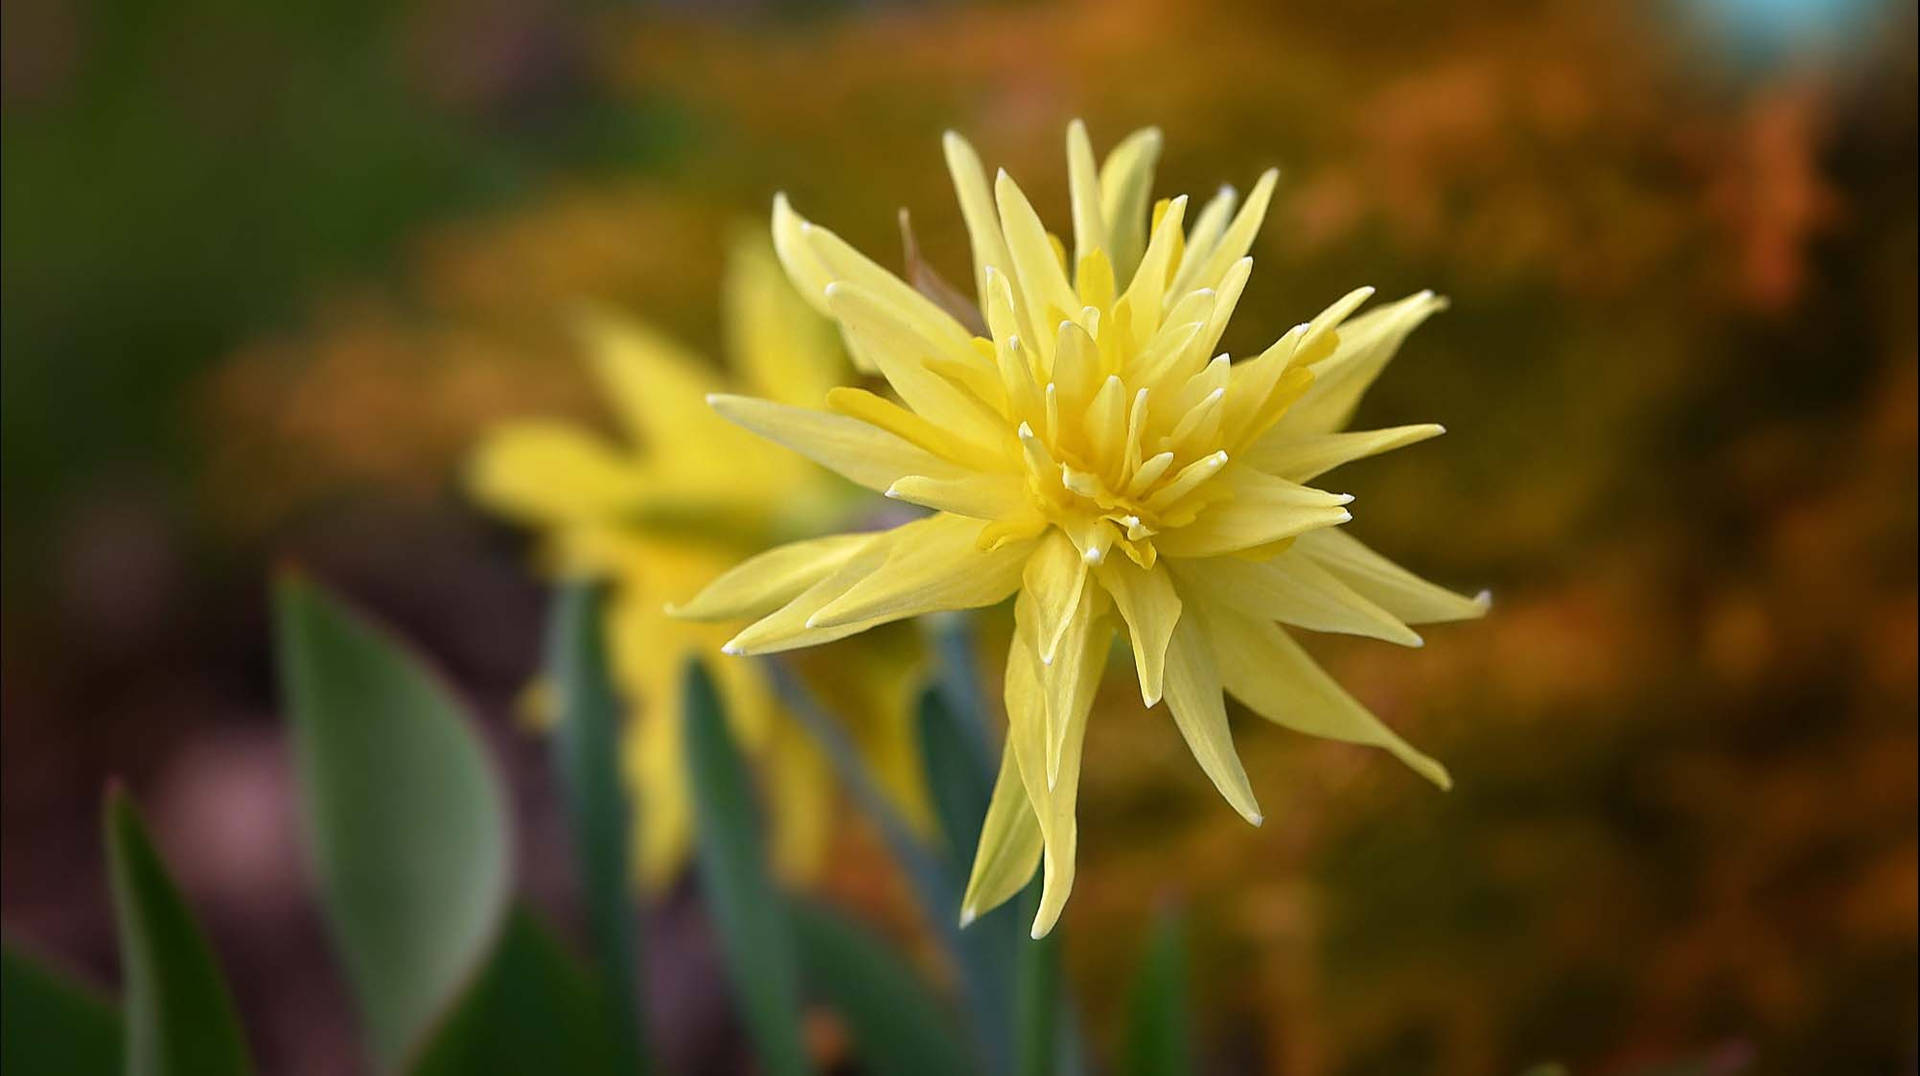 Rip Van Winkle Narcissus Flower Background